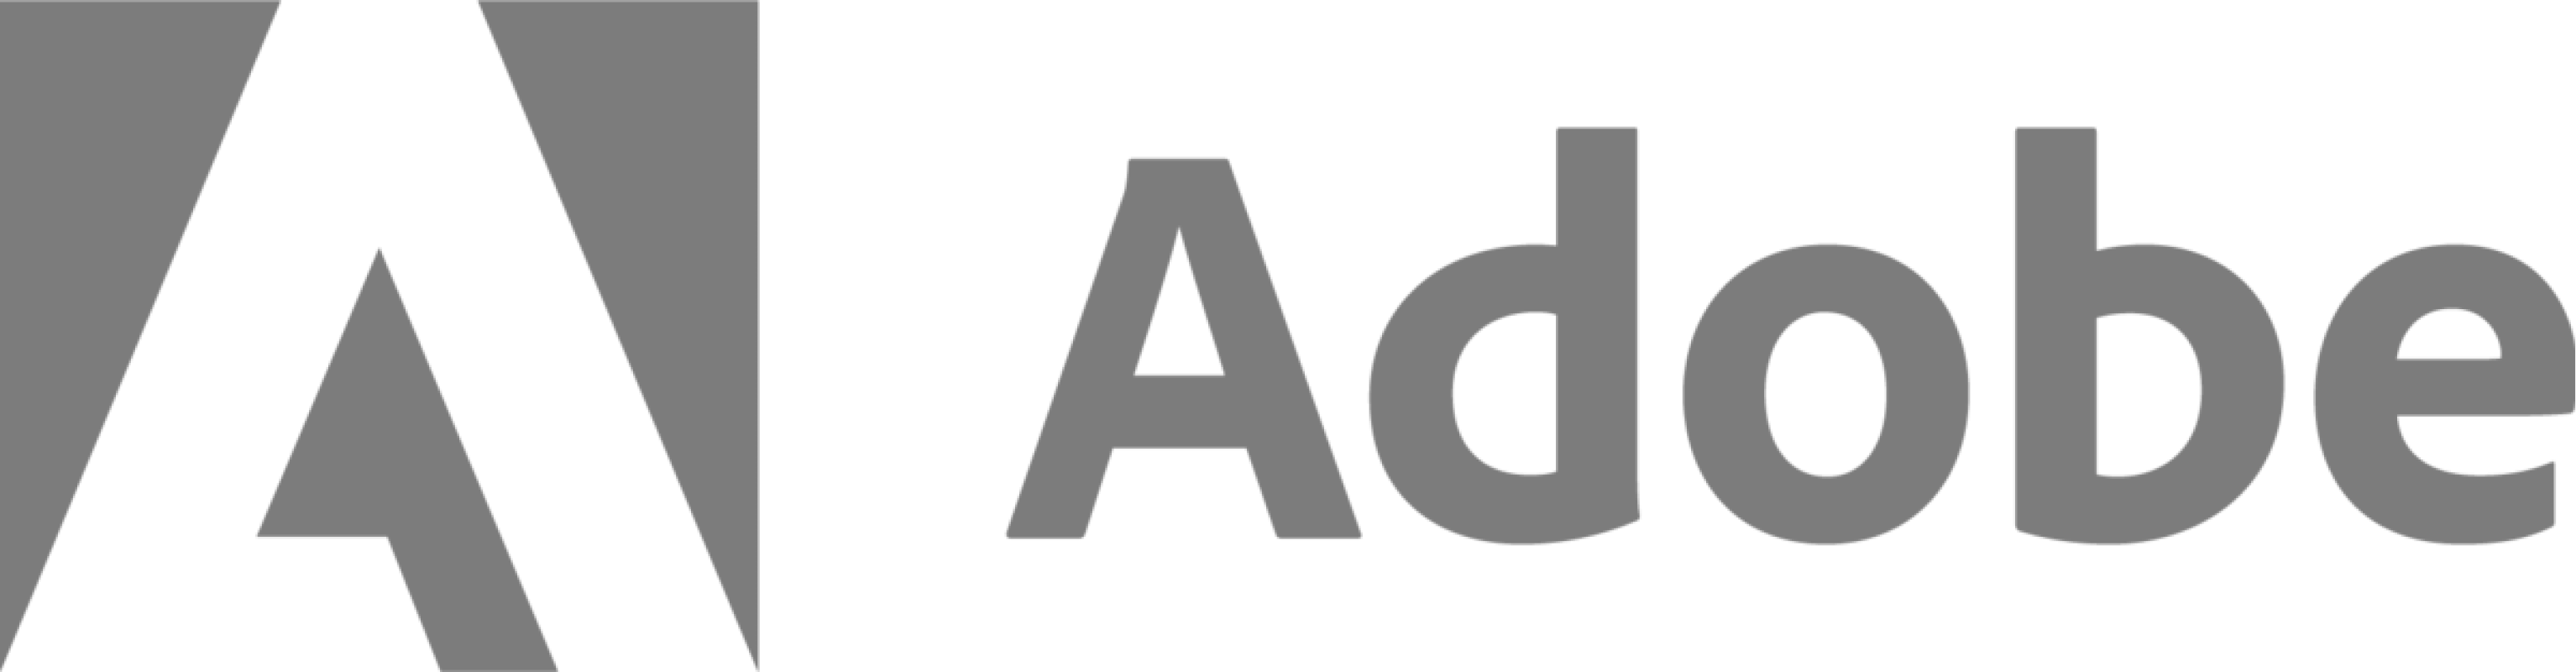 adobe-logo-testimonial-image-image